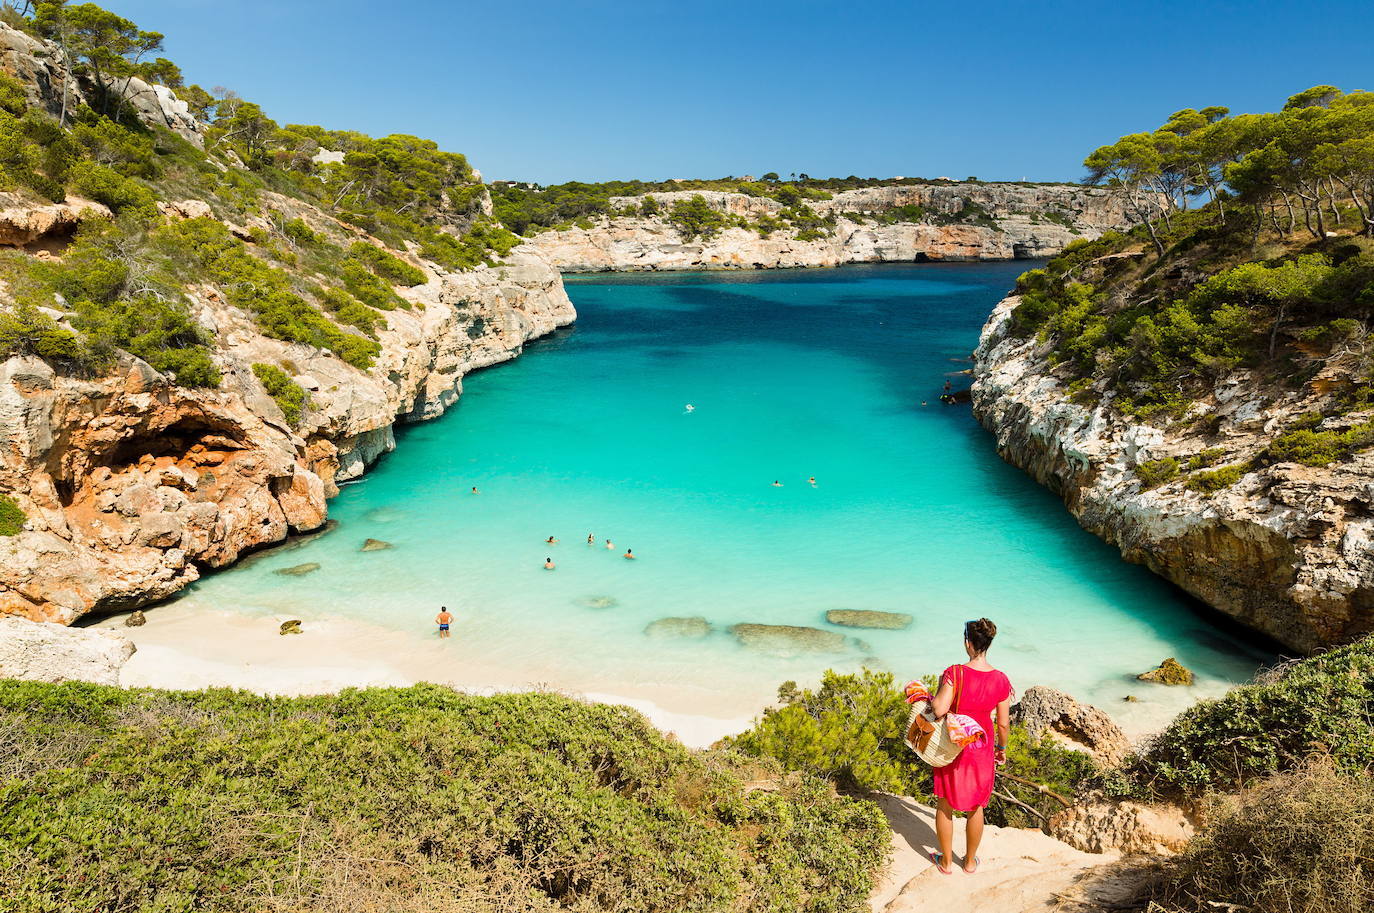 2.- Caló des Moro (Mallorca) | Caló des Moro es uno de los secretos mejor guardados de Mallorca. De arena fina y de aguas translúcidas color turquesa, esta playa virgen está situada en la zona sureste de la isla, a aproximadamente seis kilómetros del pueblo de Santanyí. Es de impactante belleza.